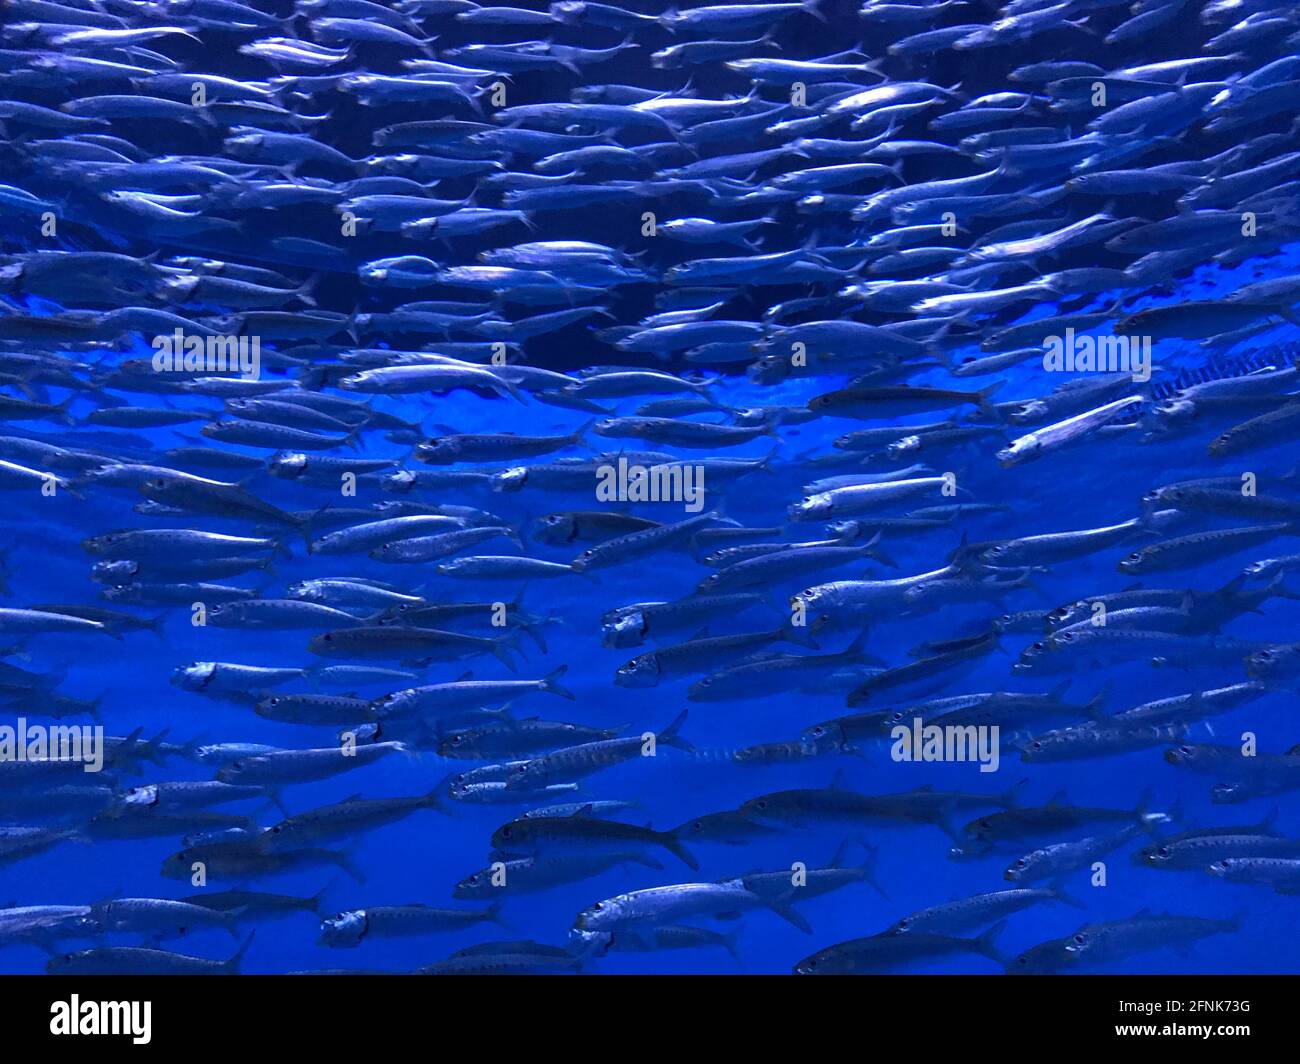 Closeup view of thousands of sardine fish schooling in aquarium Stock Photo